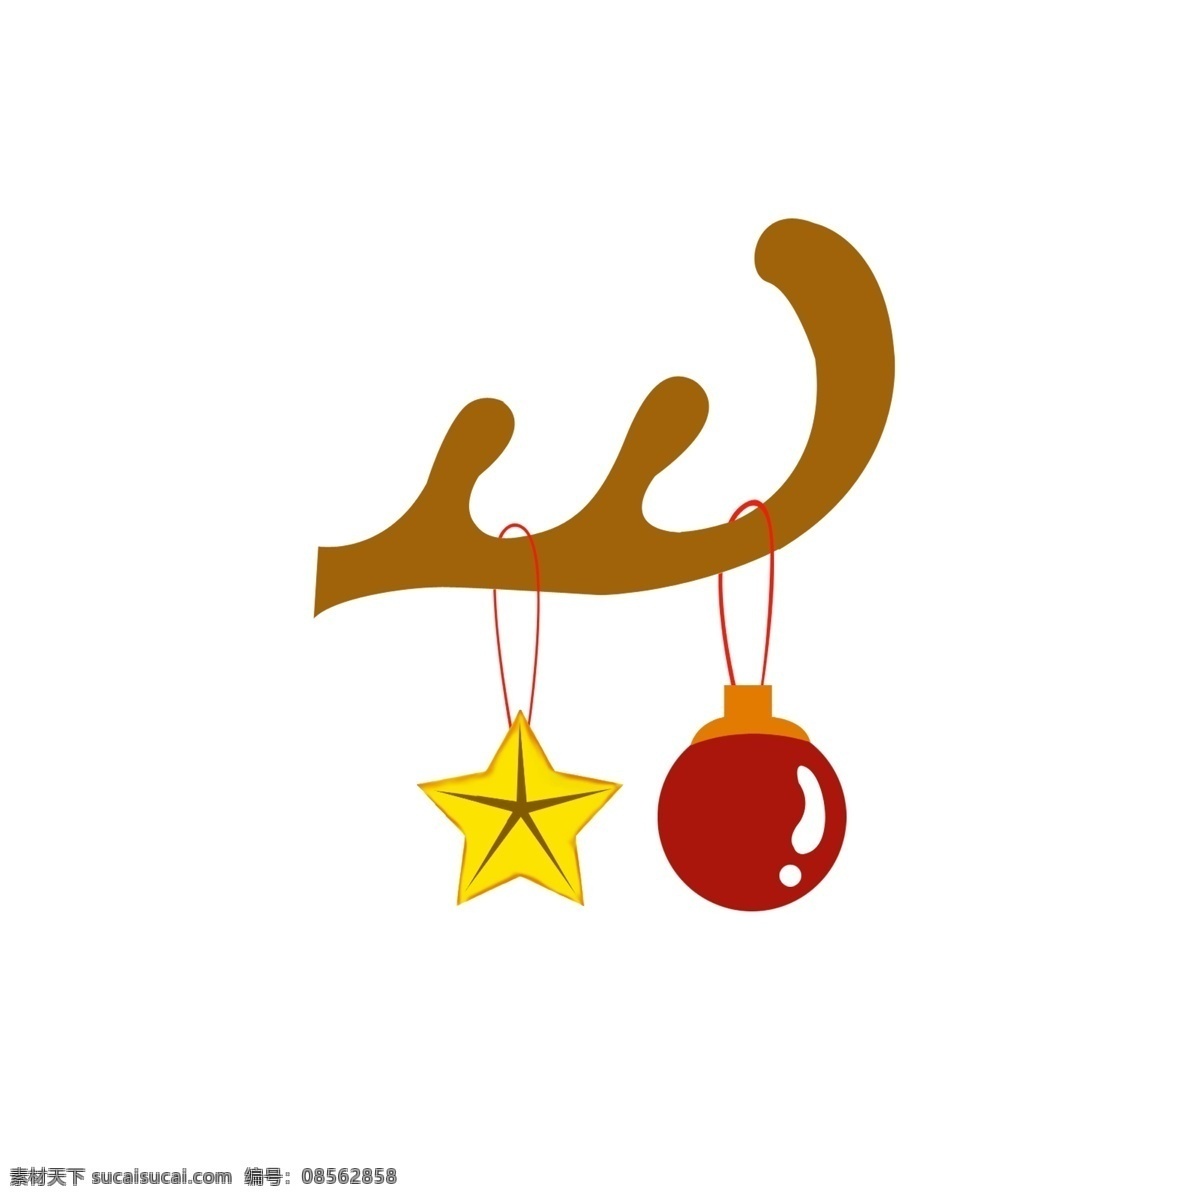 圣诞节 挂饰 商用 鹿角 圣诞球 星星